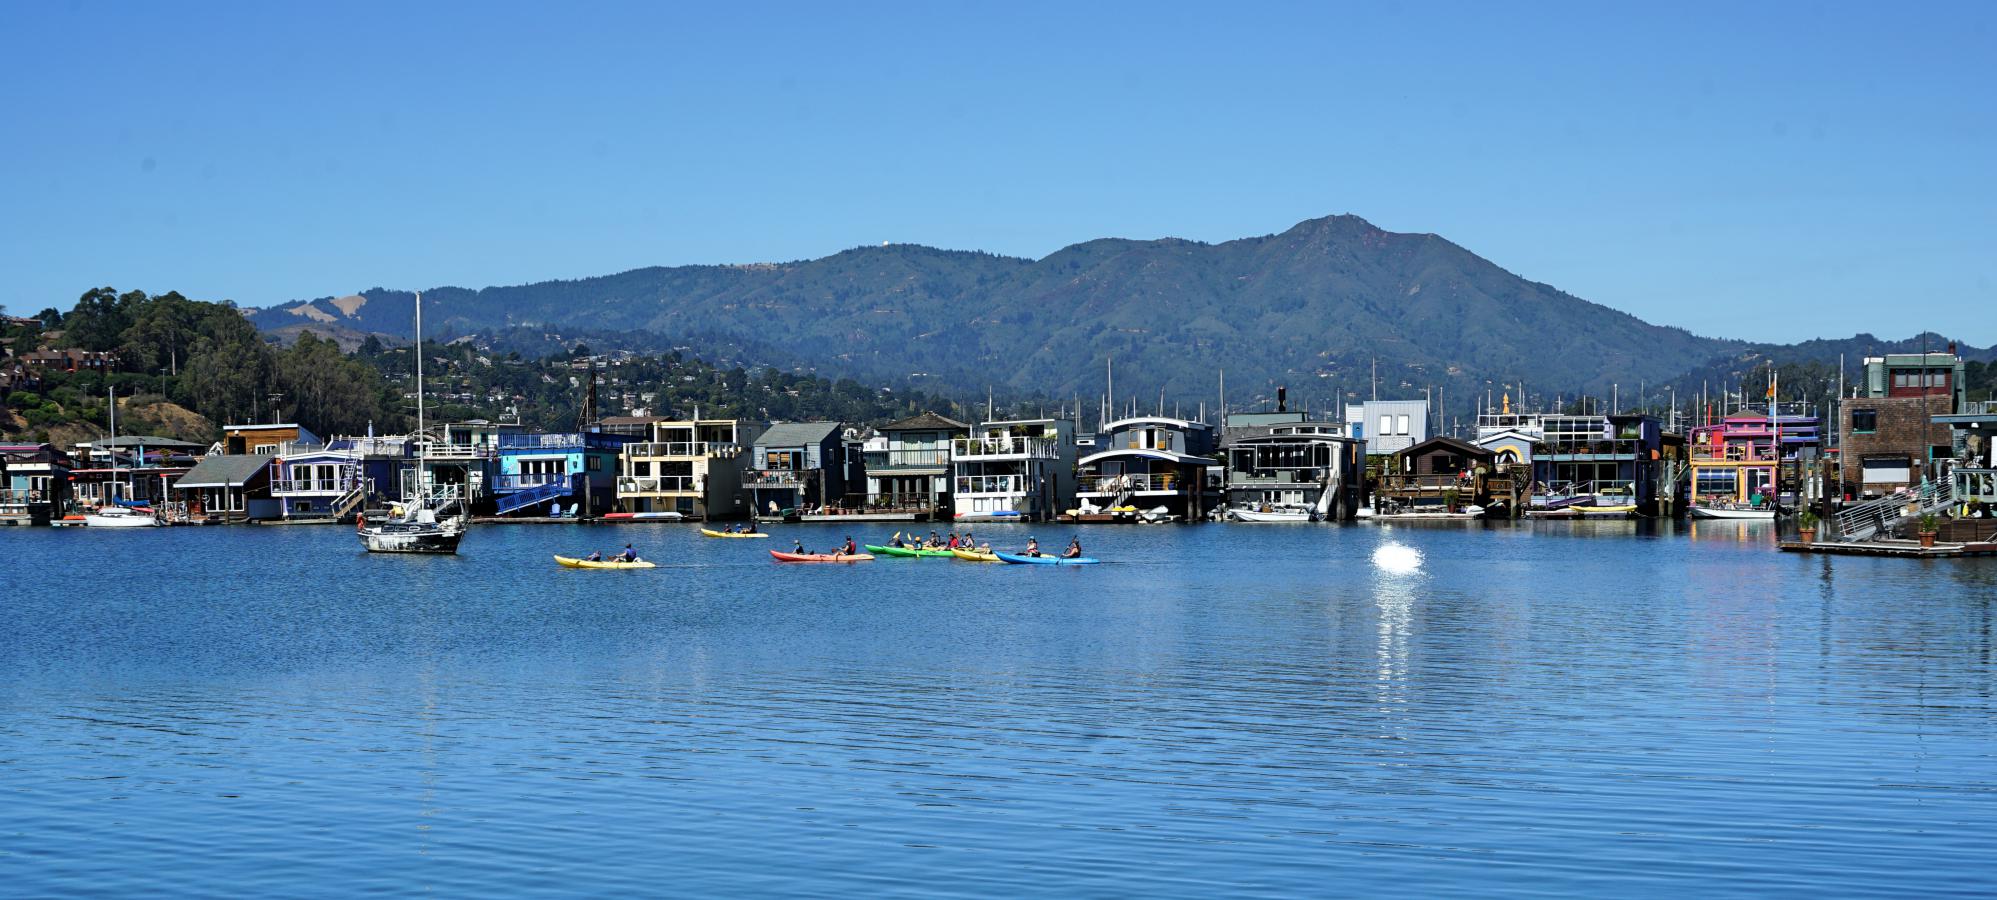 Casas barco em Sausalito - Hotel California Blog